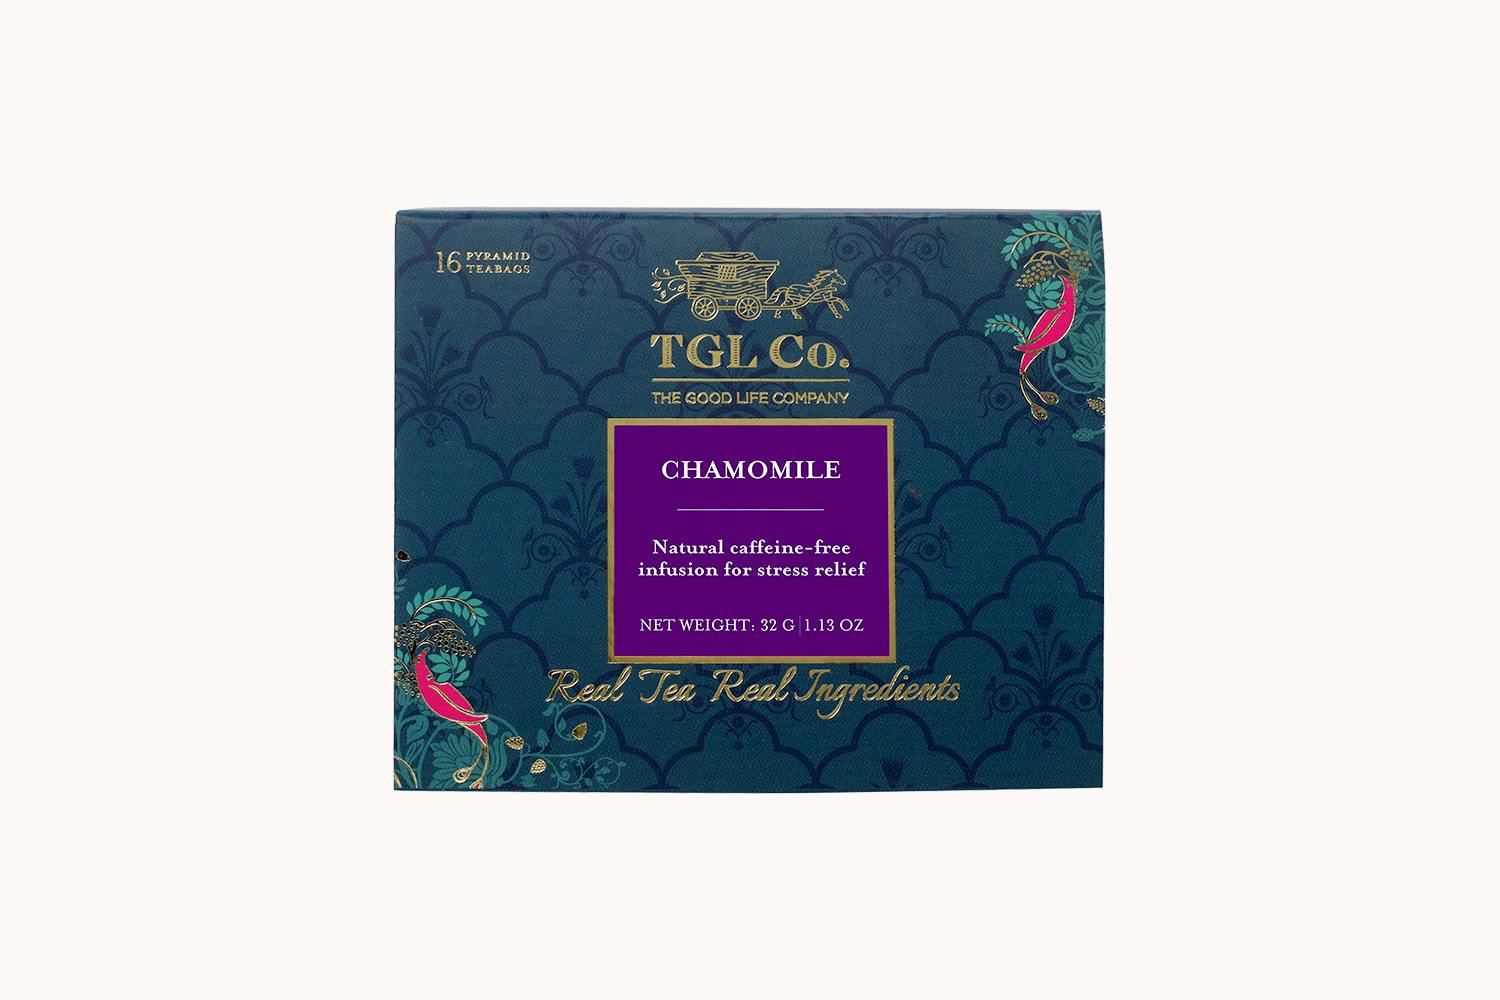 TGL Co. Chamomile Tea